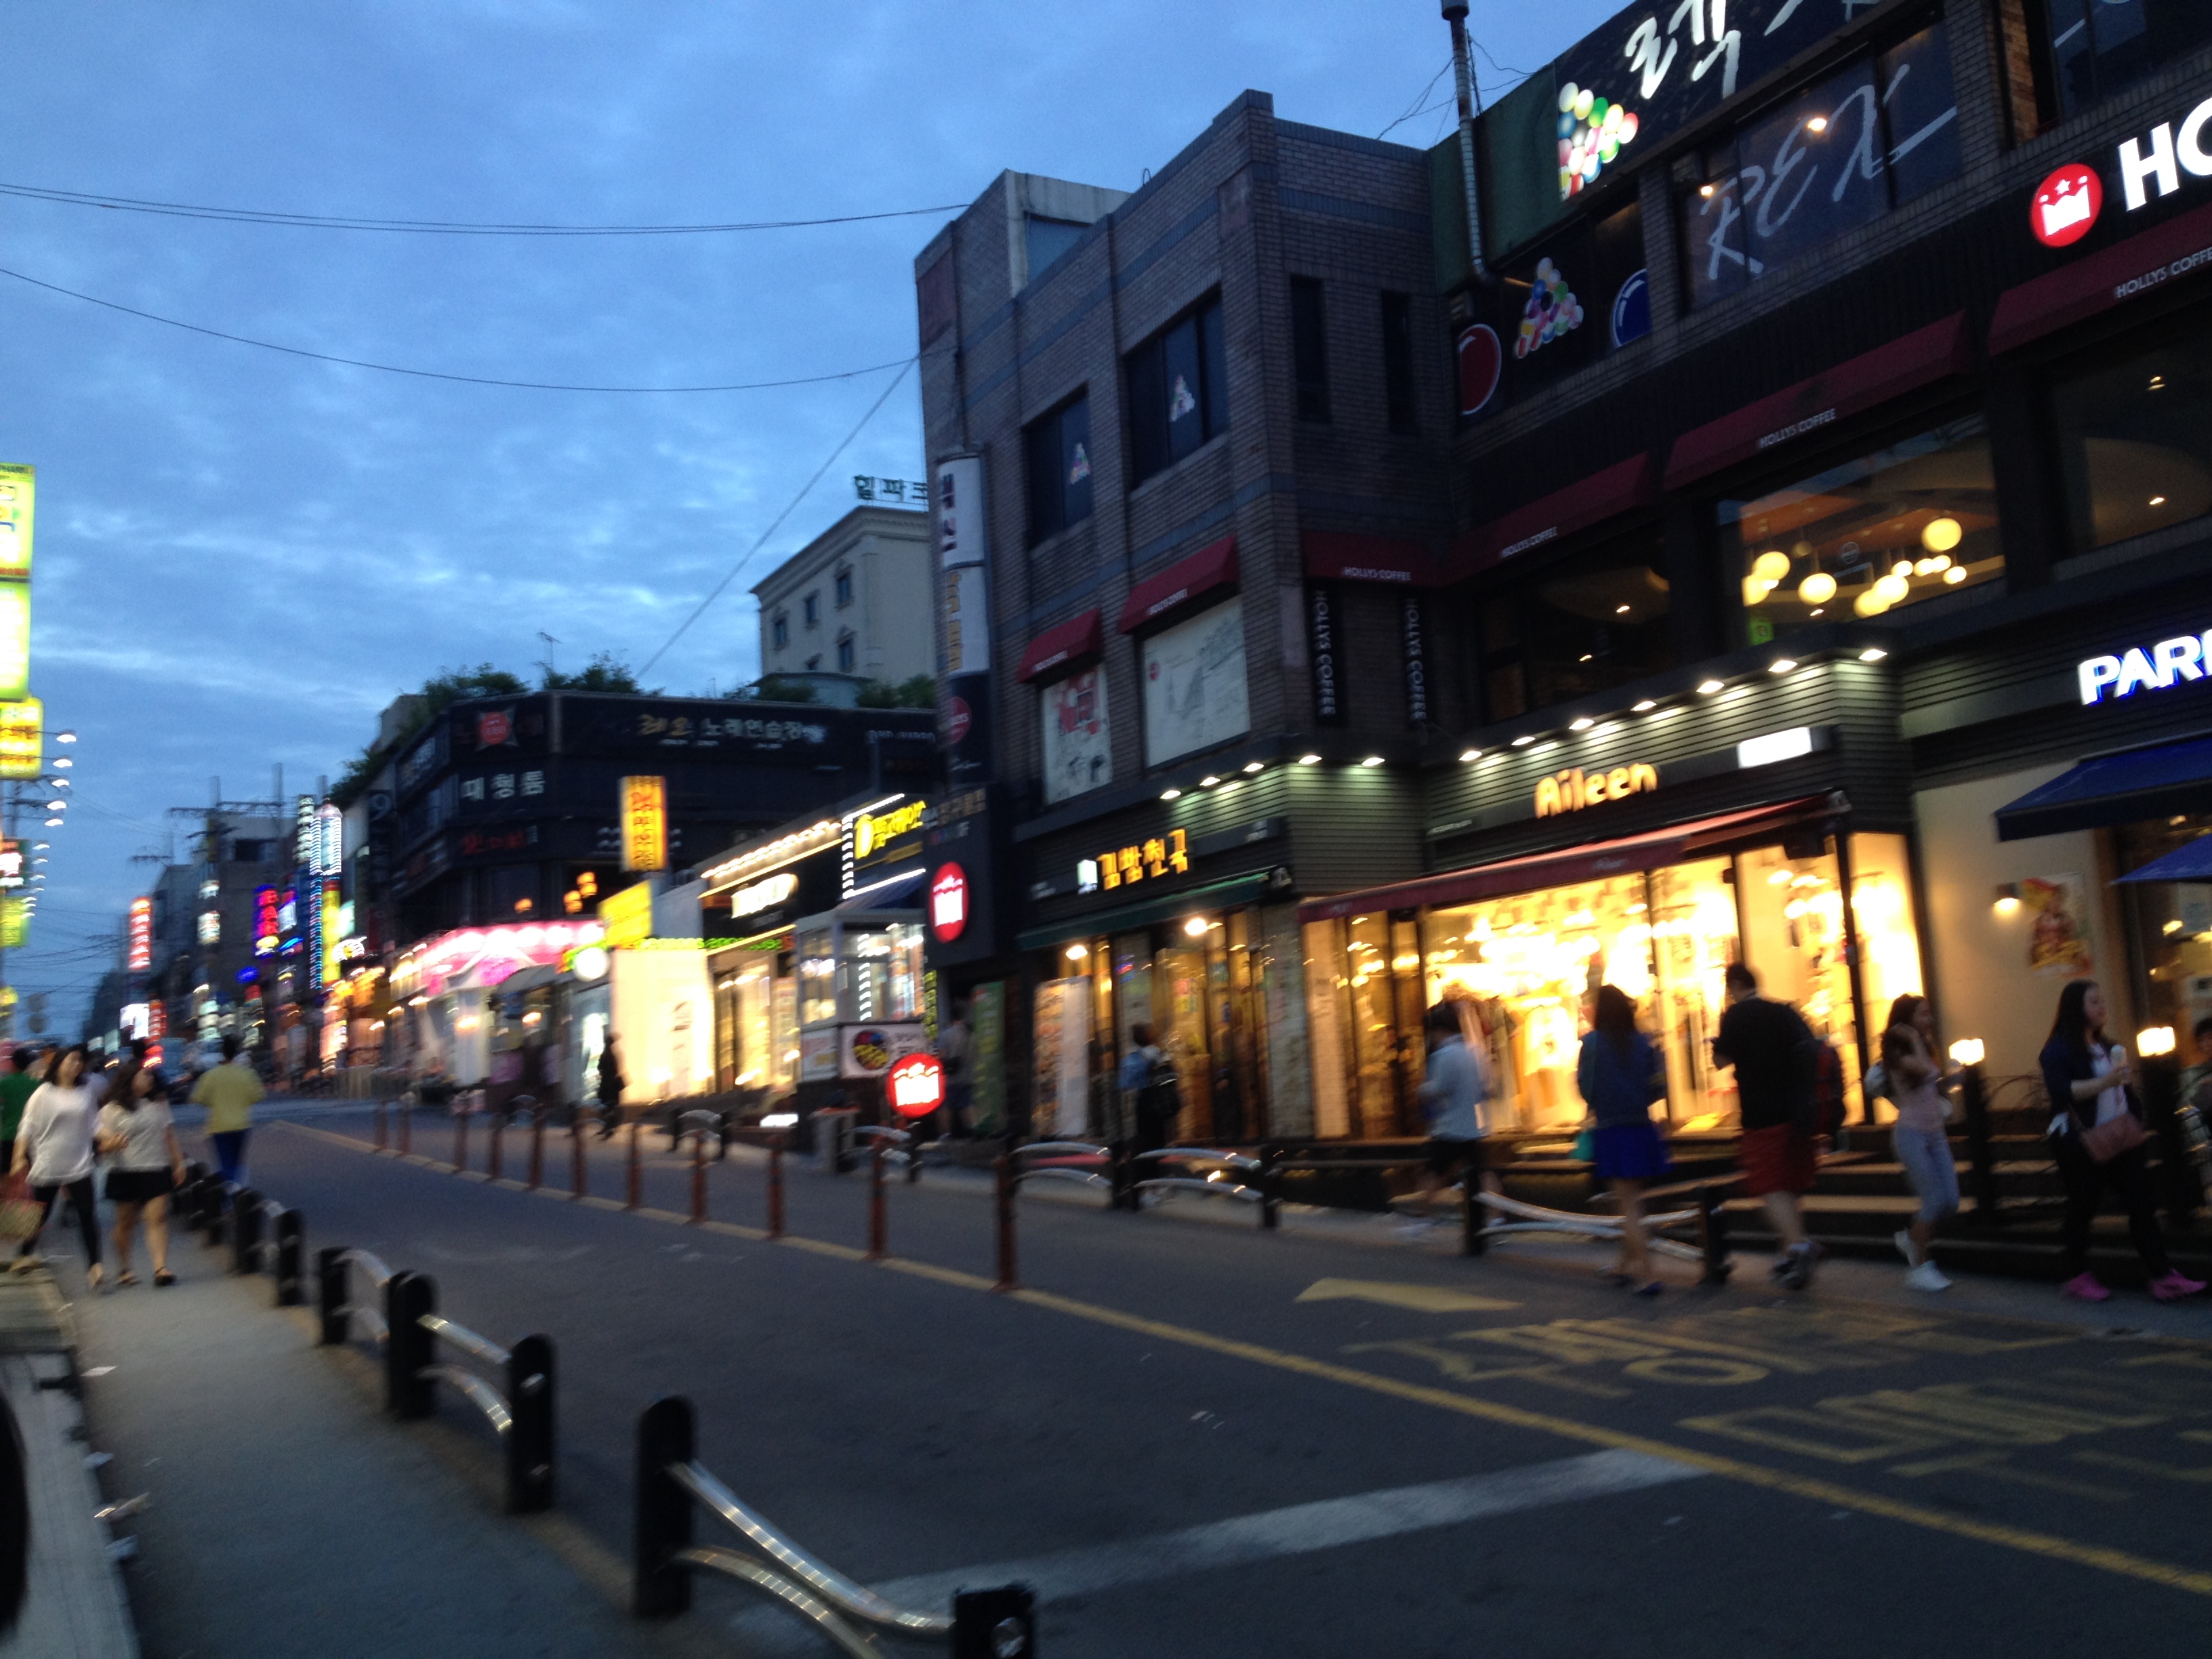 一个街区一个街区组成了这样子的街道,坡状的道路是韩国特色~路边小店